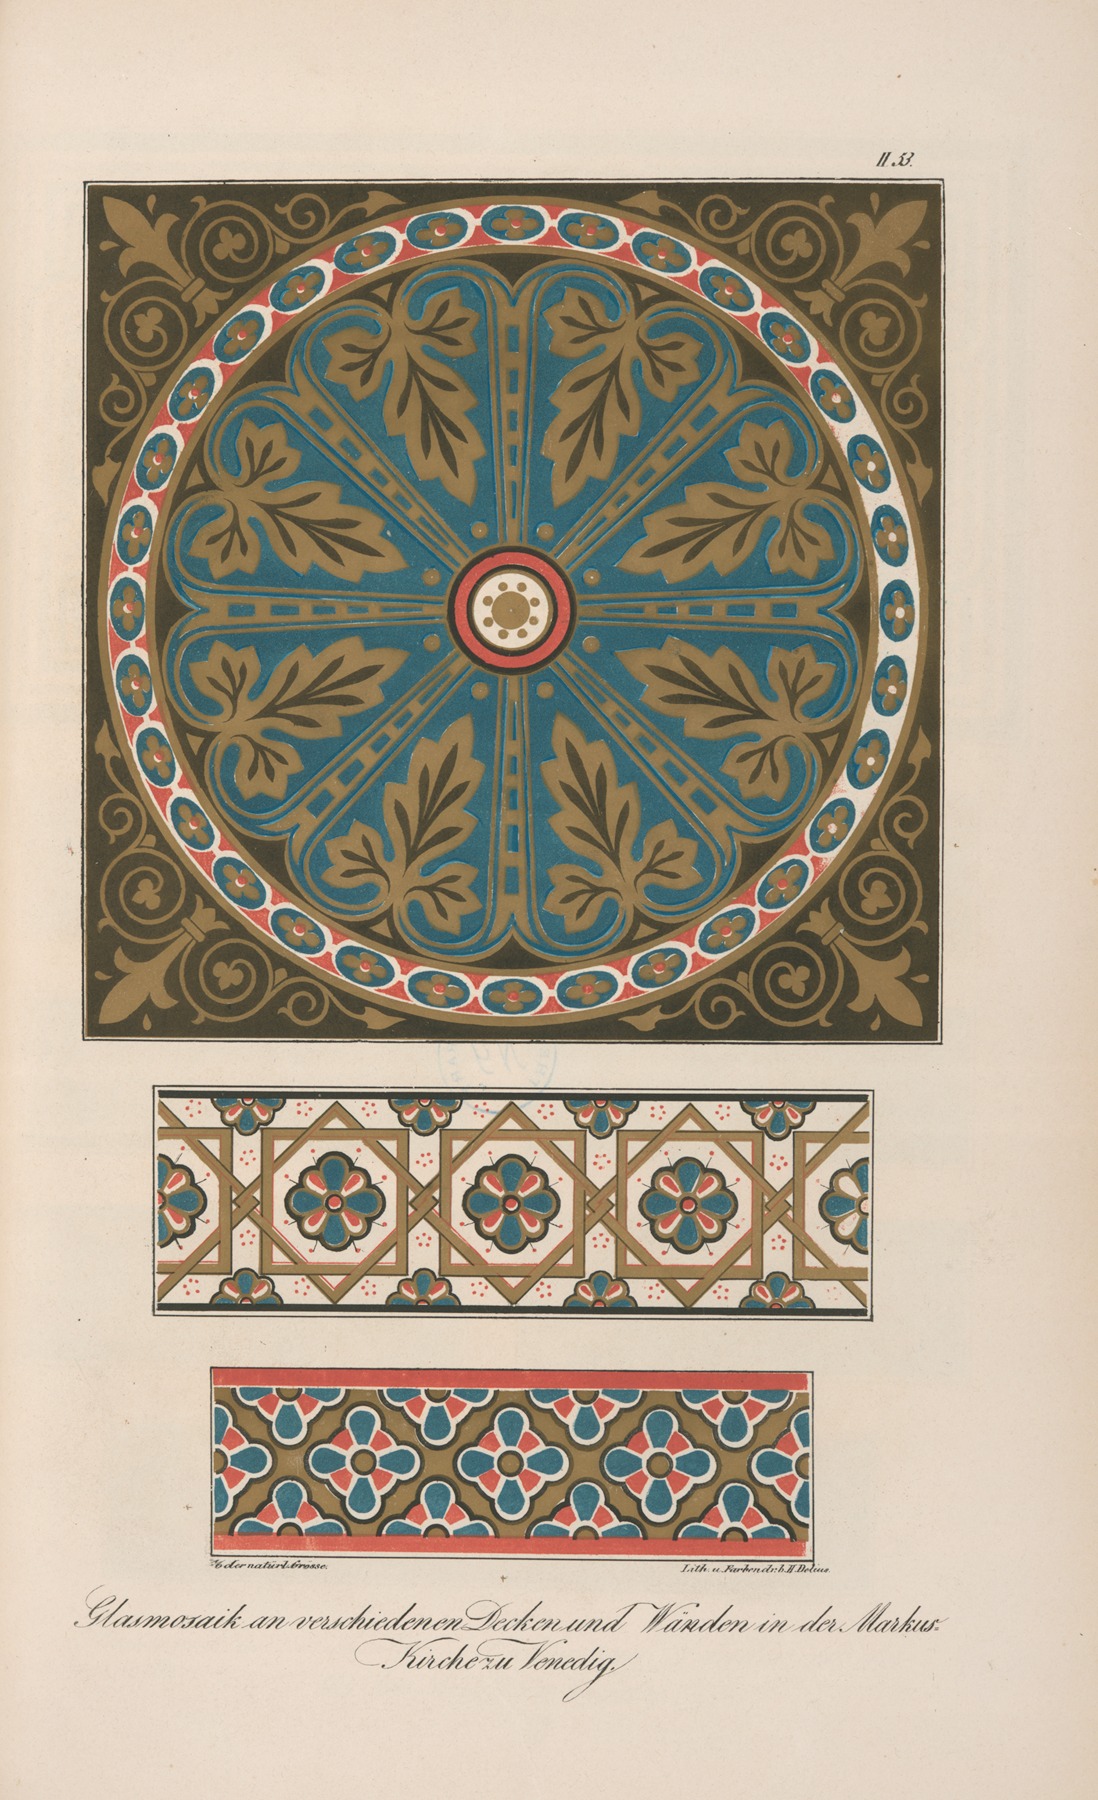 Friedrich Maximilian Hessemer - Glasmosaik an verschiedenen Decken und Wänden in der Markus-Kirche zu Venedig